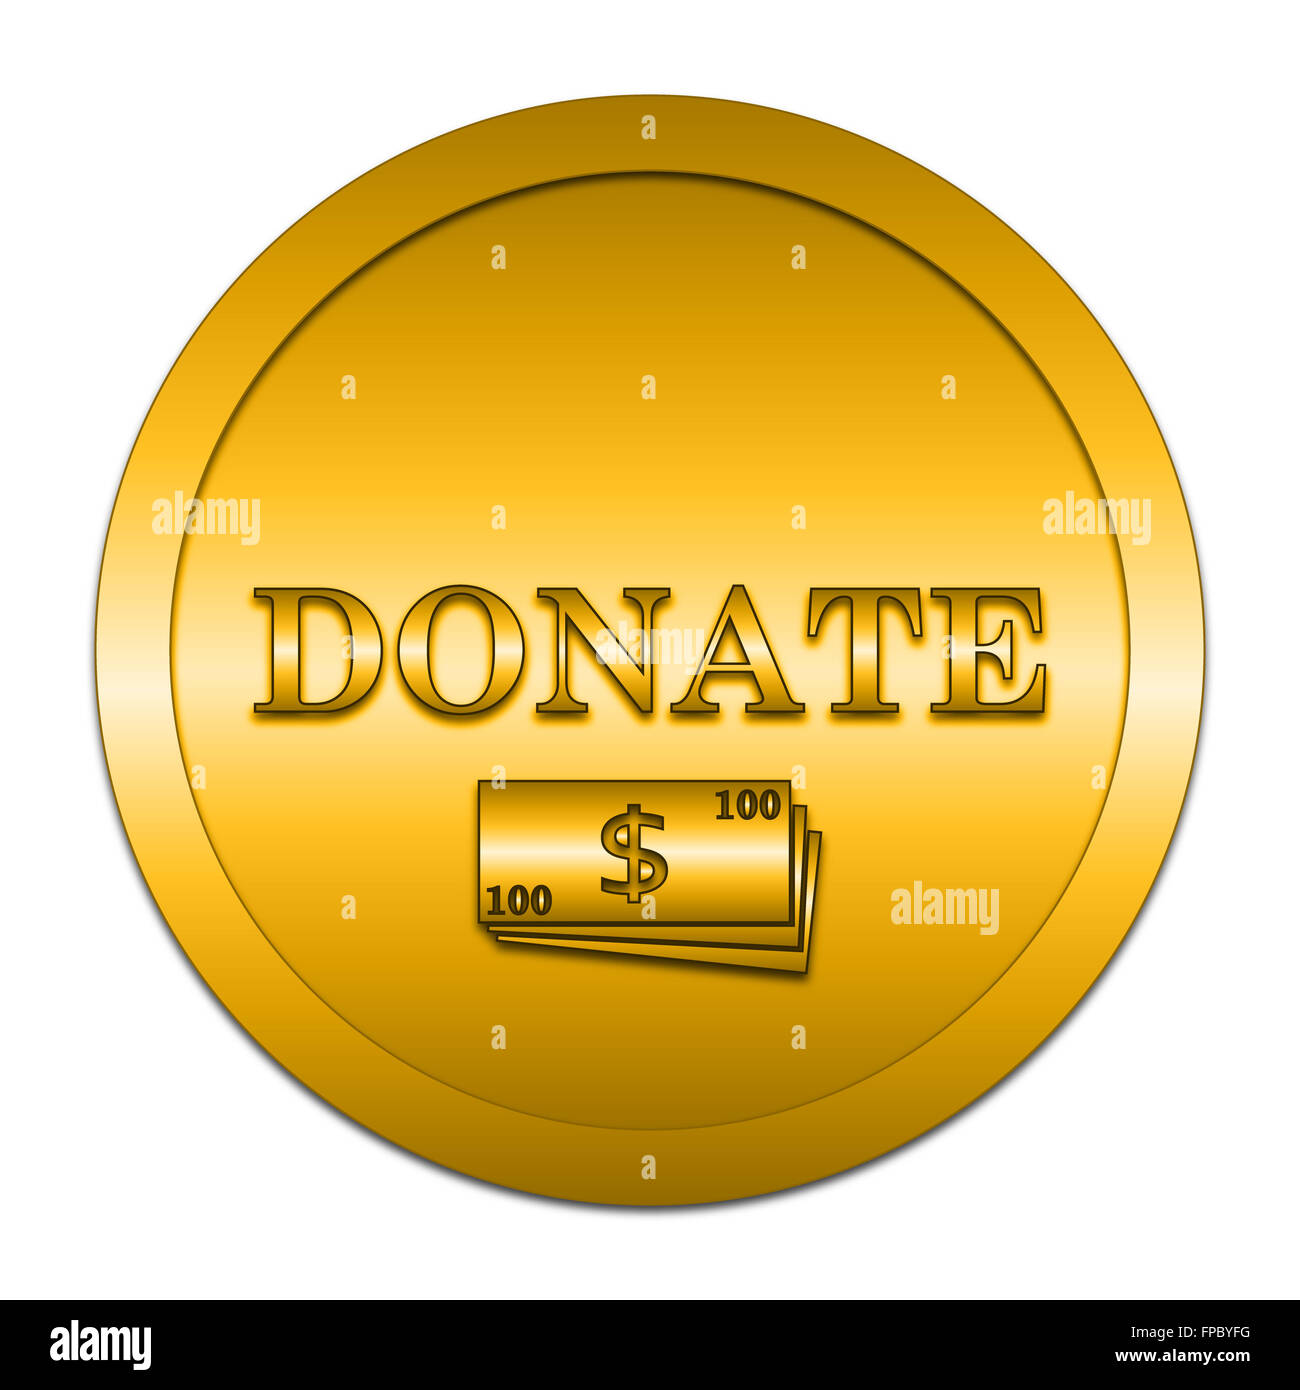 Donate icon. Internet button on white background. Stock Photo